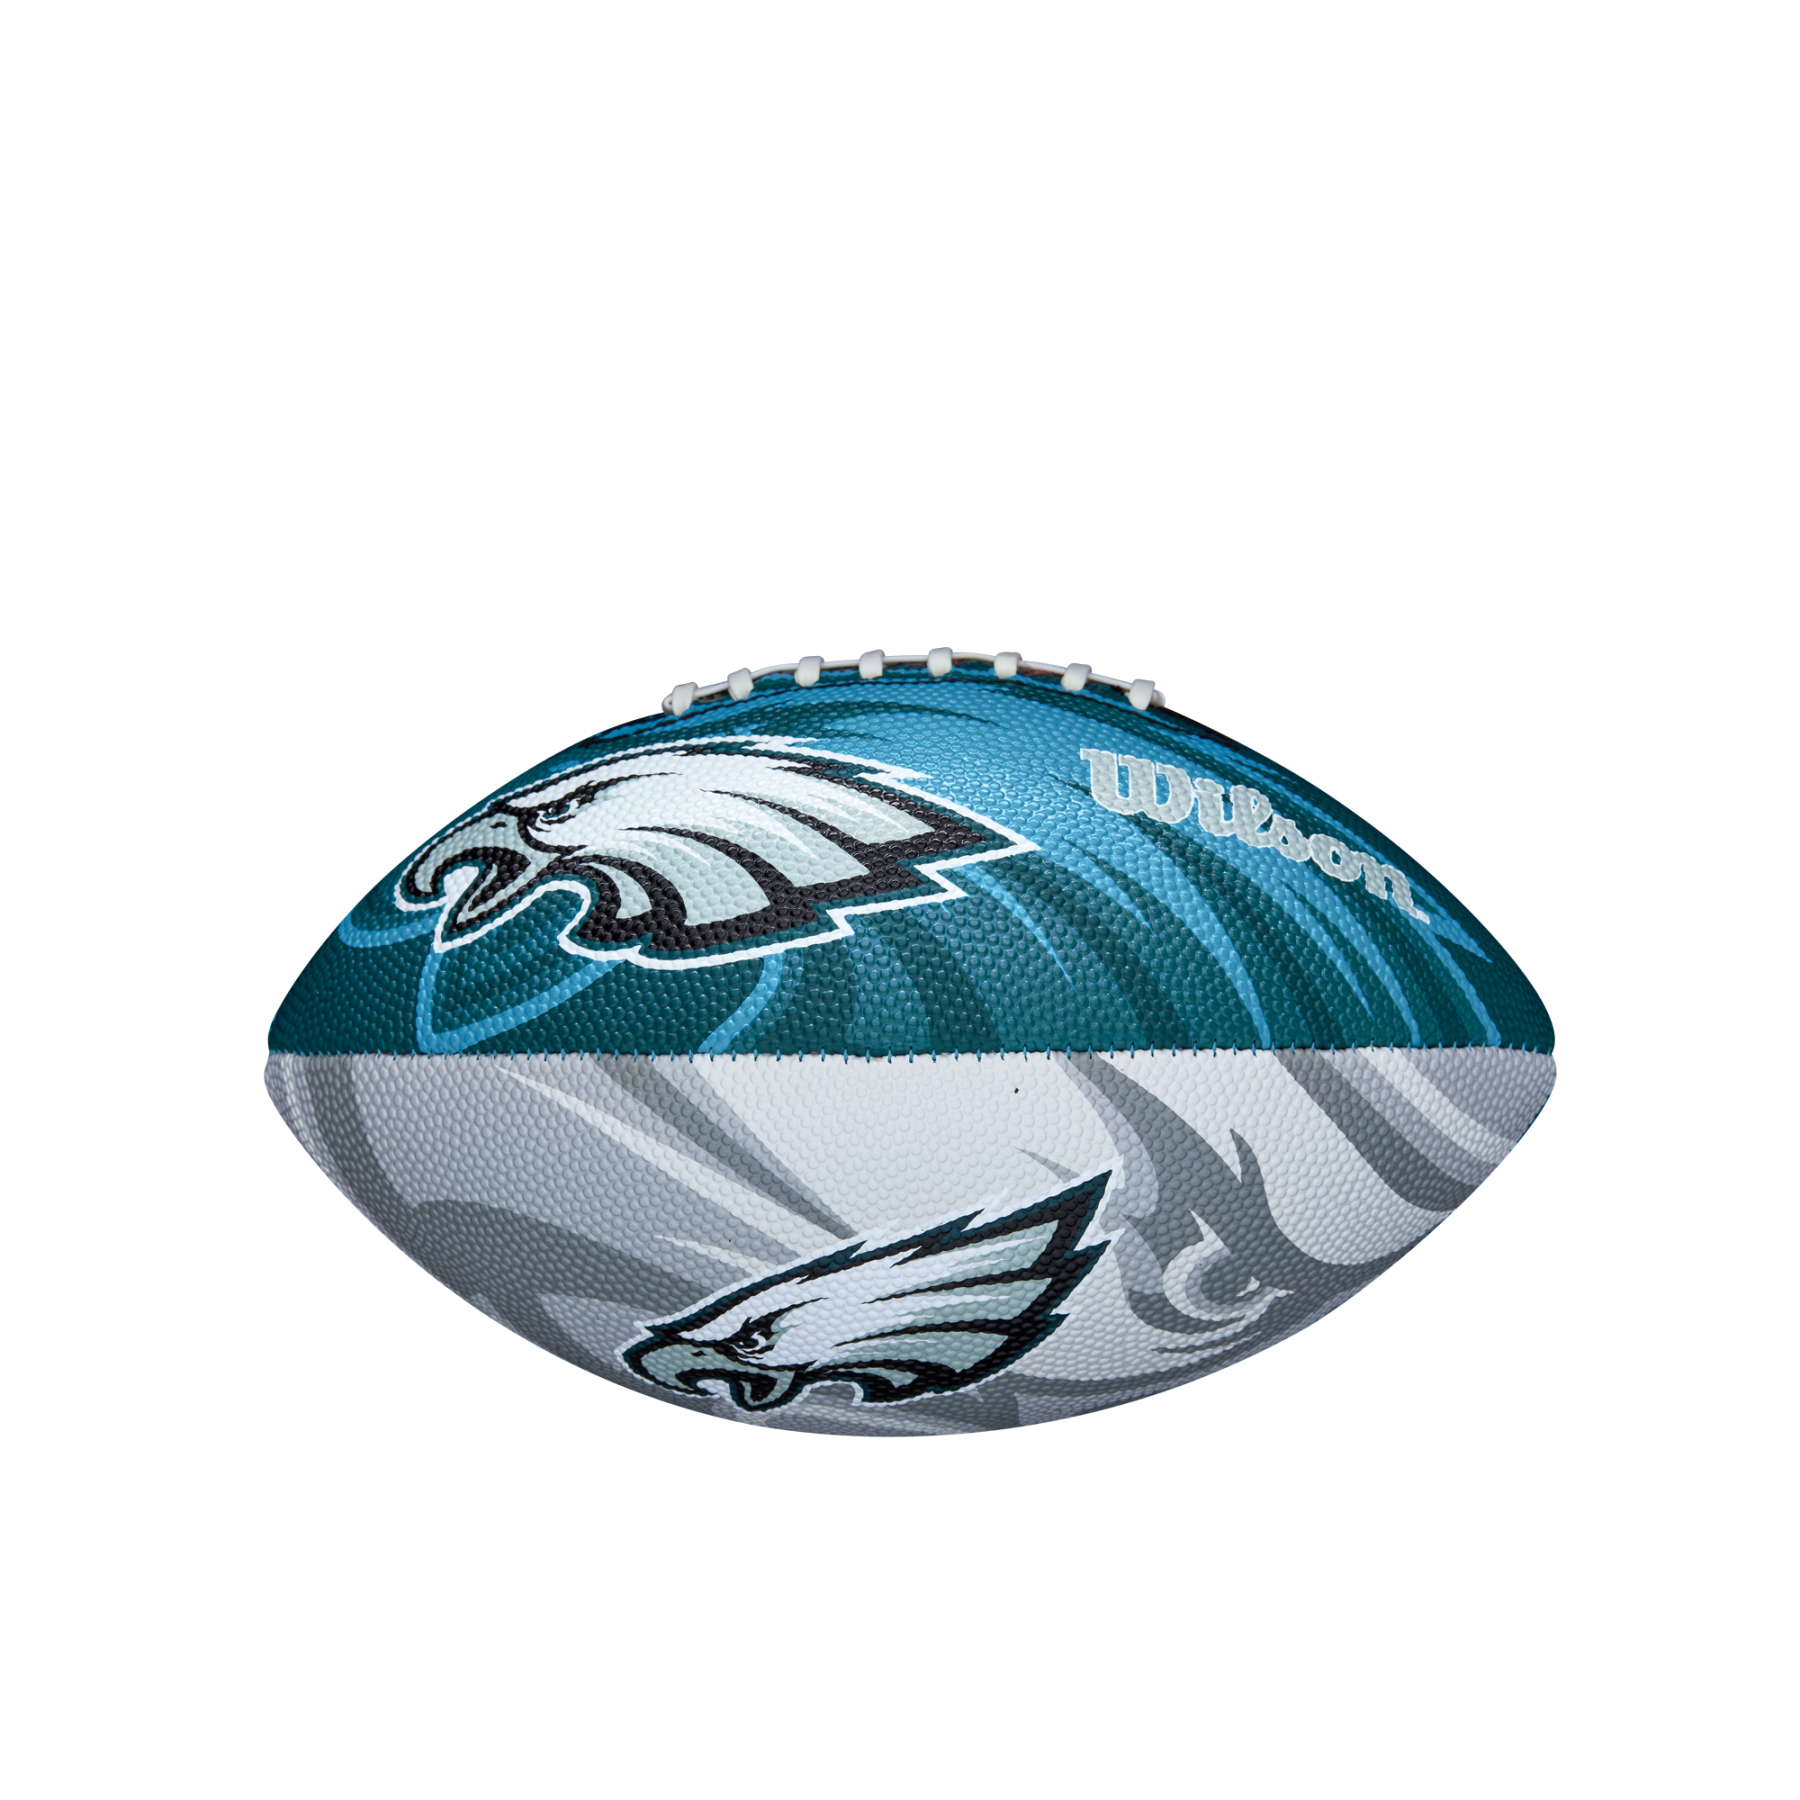 Children's ball Wilson Eagles NFL Logo